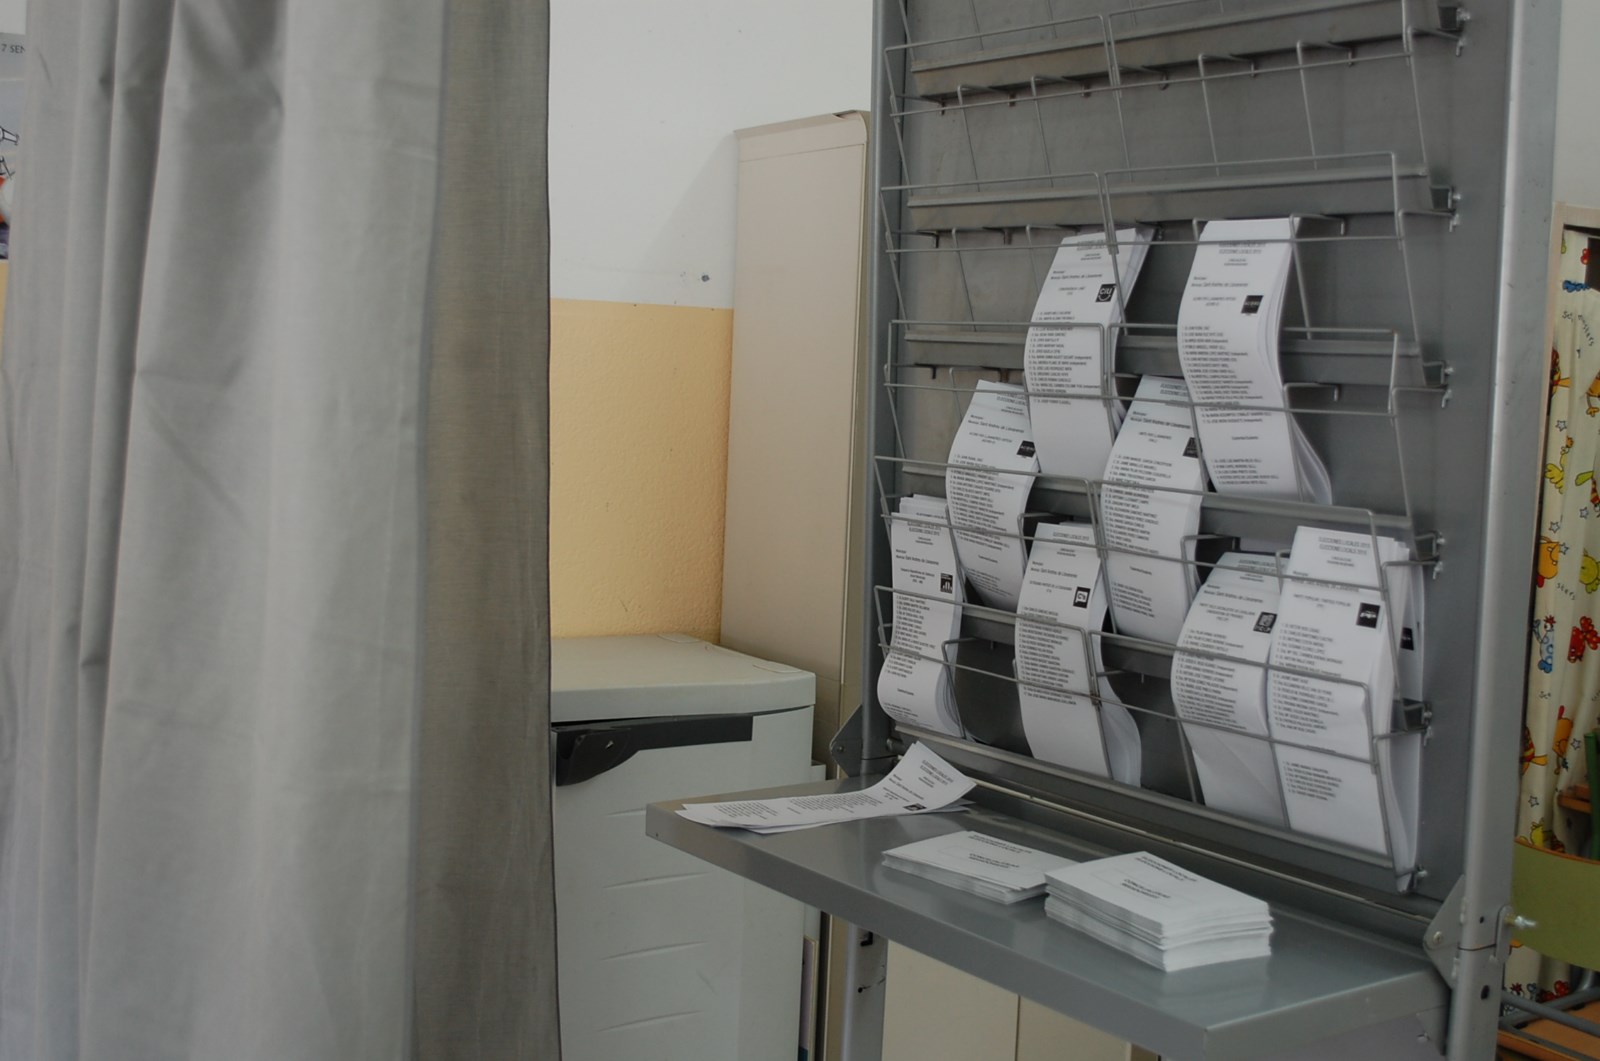 Paperetes electorals a punt per al 24 de maig de 2015. Eleccions municipals